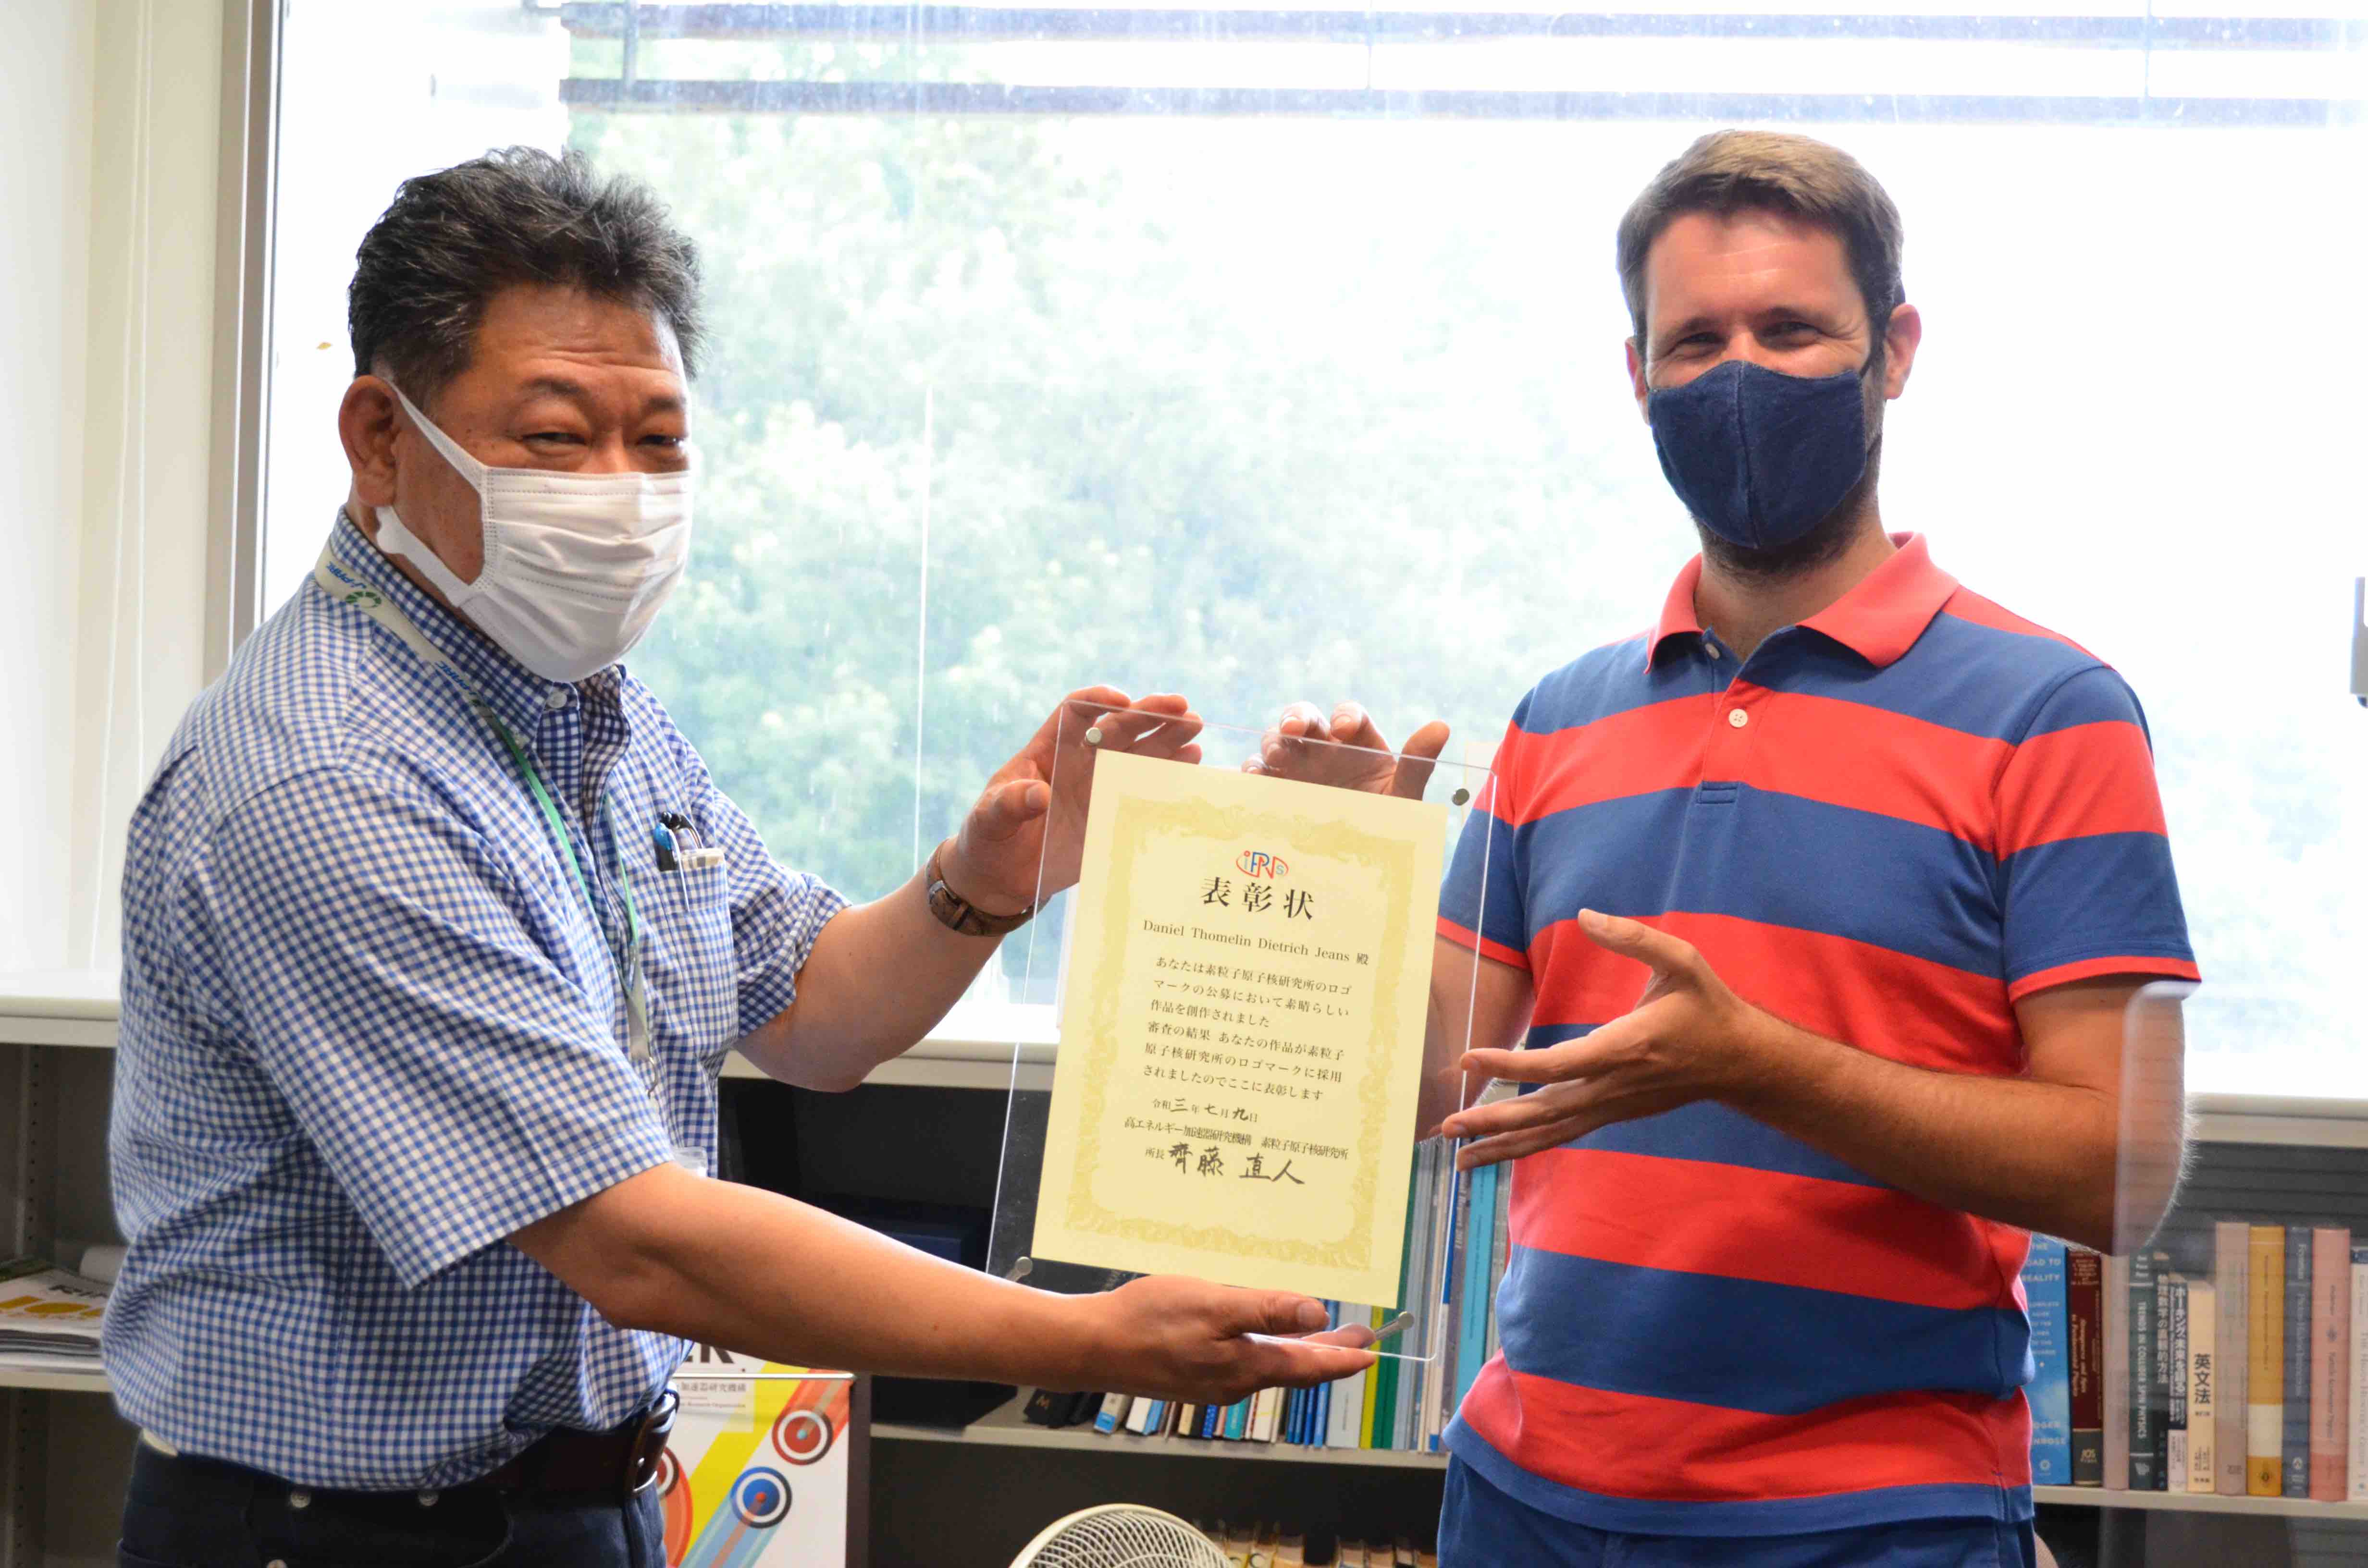 齊藤直人 所長（写真左）から記念の賞状を手渡されるDaniel Jeans准教授（写真右）。